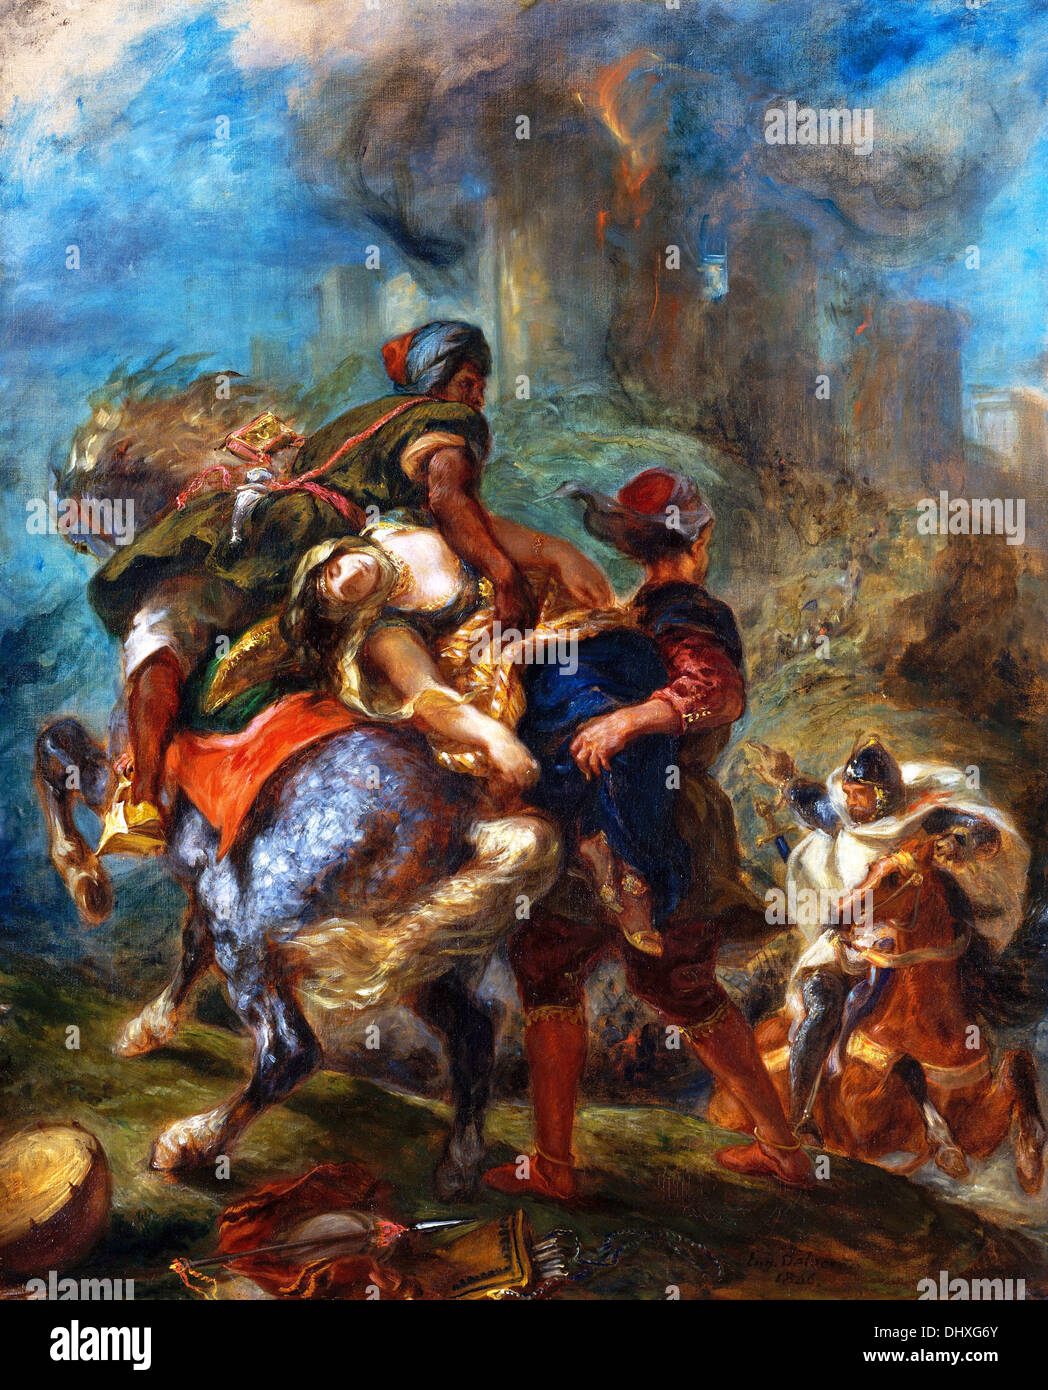 The Abduction of Rebecca - by Eugène Delacroix, 1846 Stock Photo